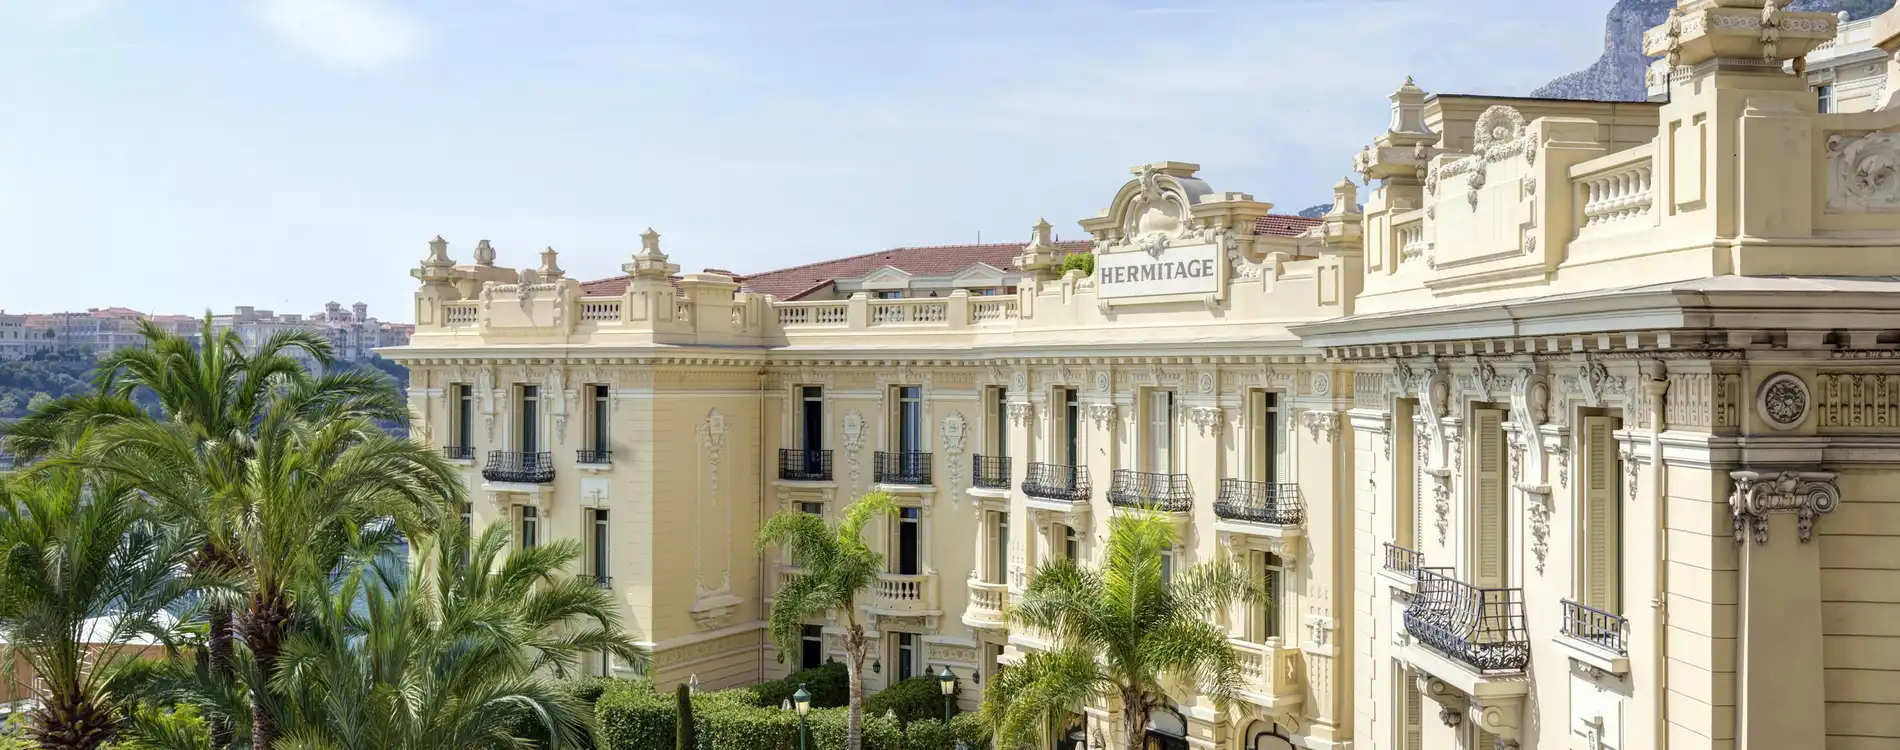 Hôtel Hermitage Monte-Carlo Façade Excelsior